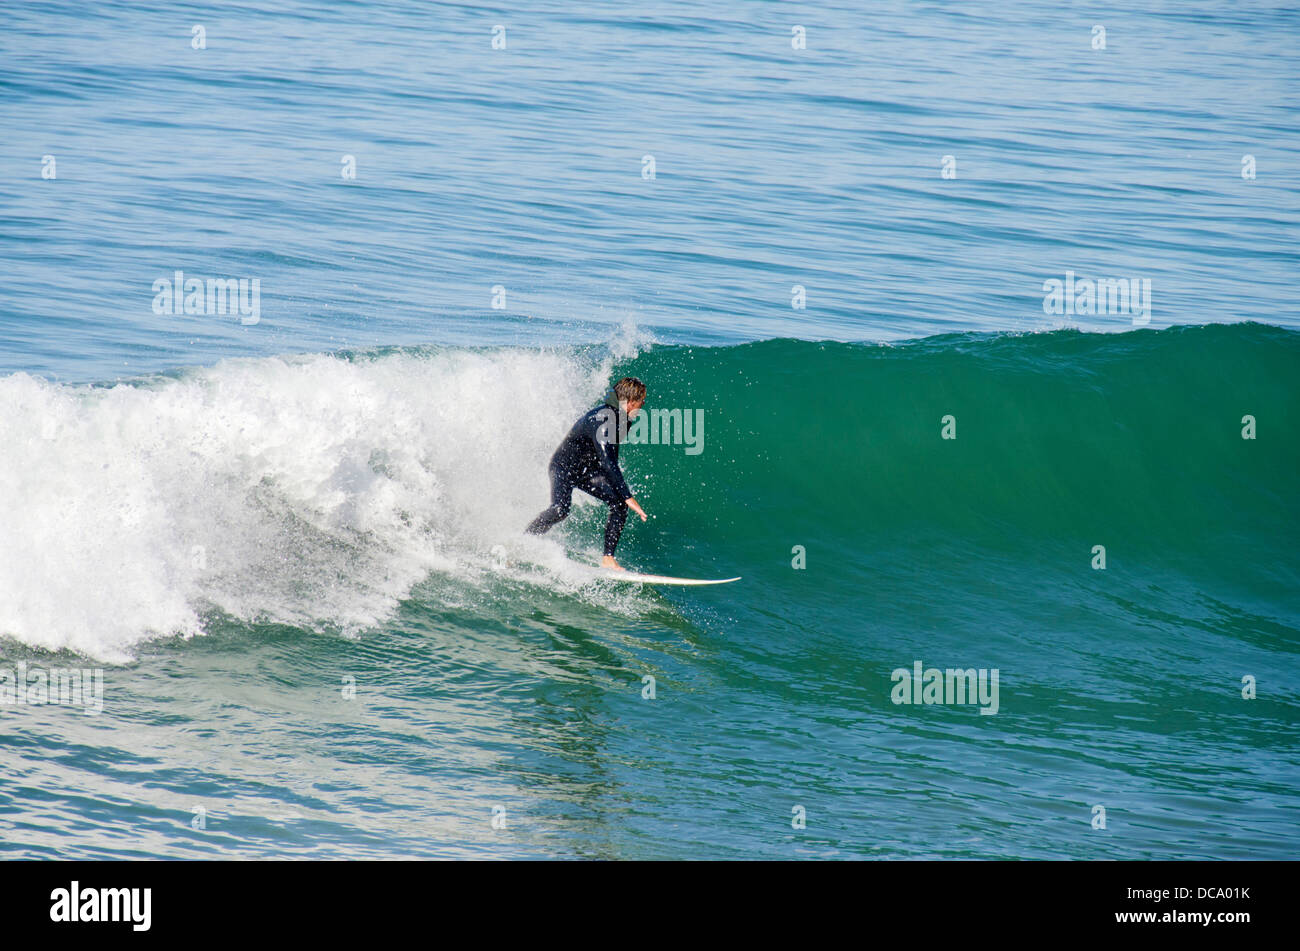 Stati Uniti, California, Pacific Coast, Pismo Beach. California surfer. Foto Stock